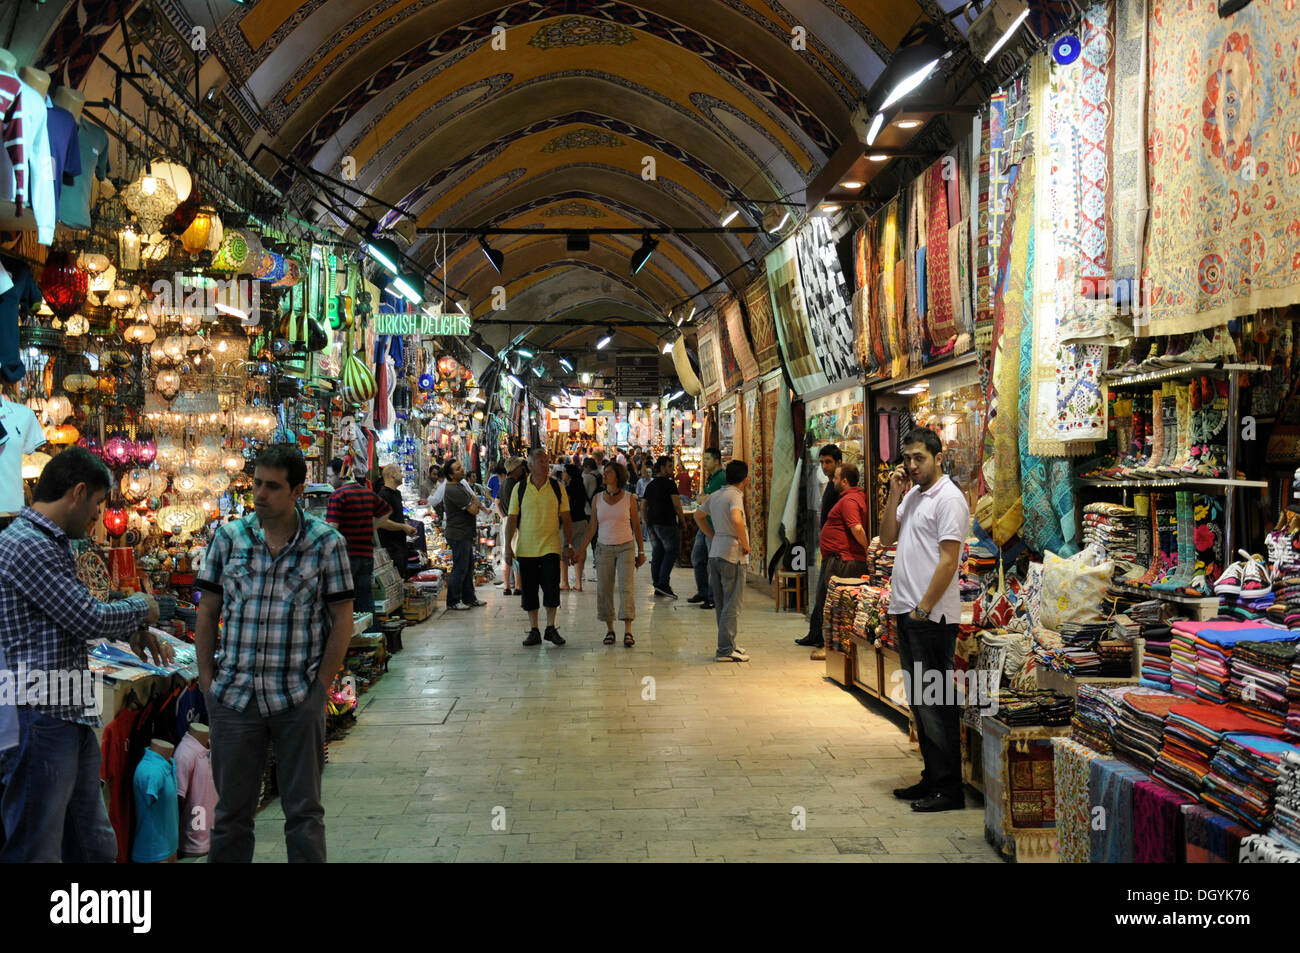 Vue de l'intérieur, la partie couverte du grand bazar, Kapali Carsi, vieille ville, Istanbul, Turquie, Europe Banque D'Images